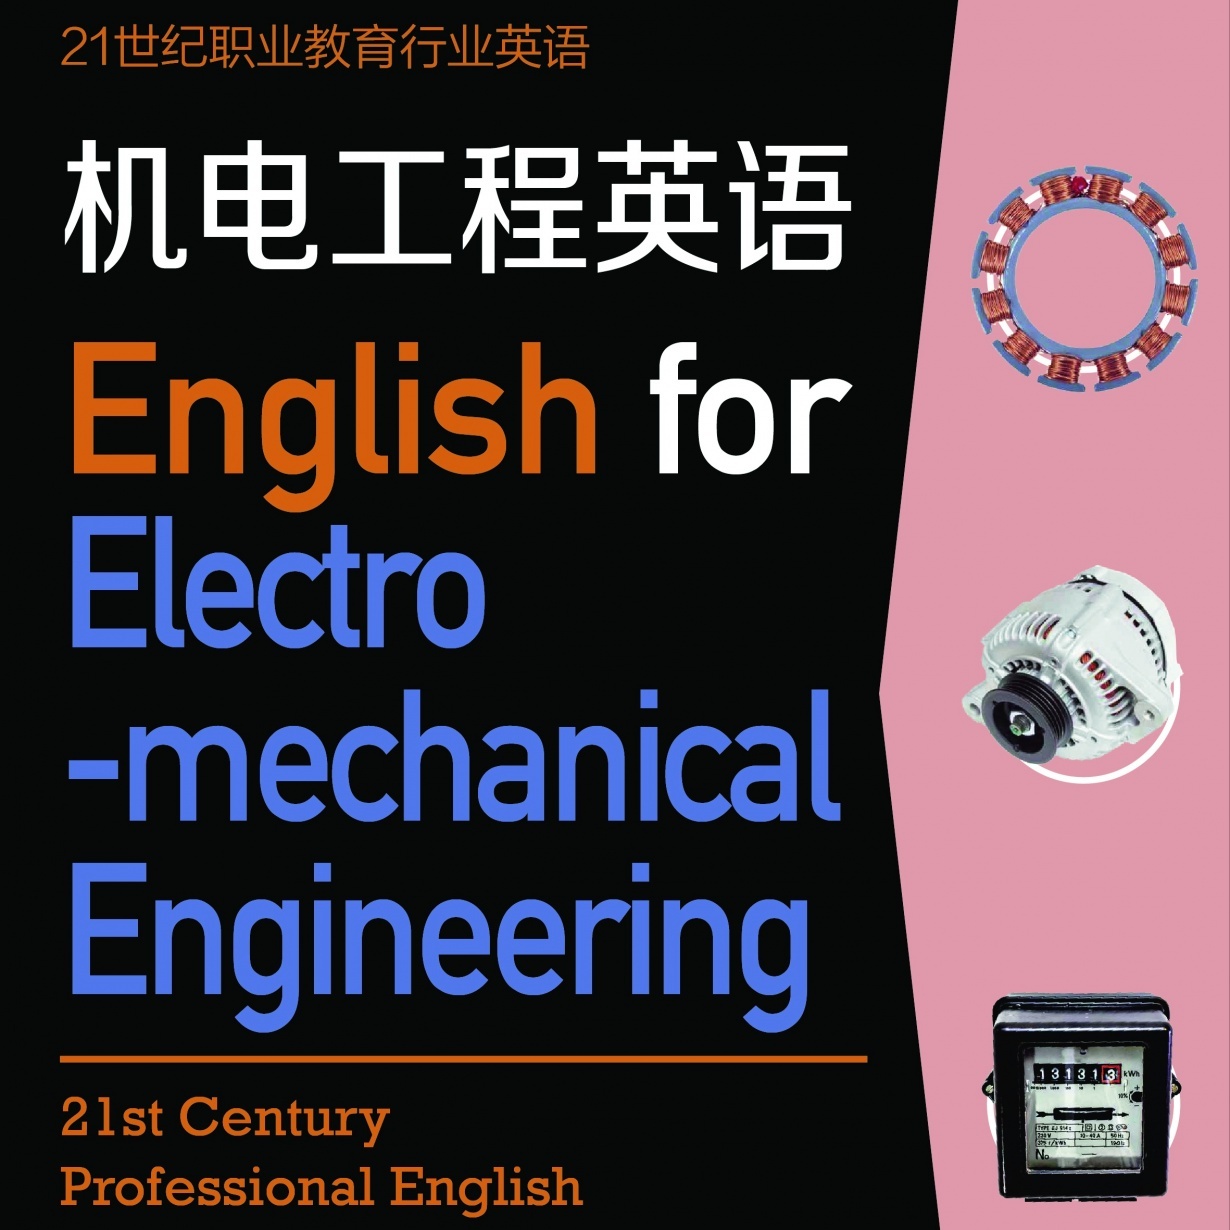 【视听包】机电工程英语.mp4